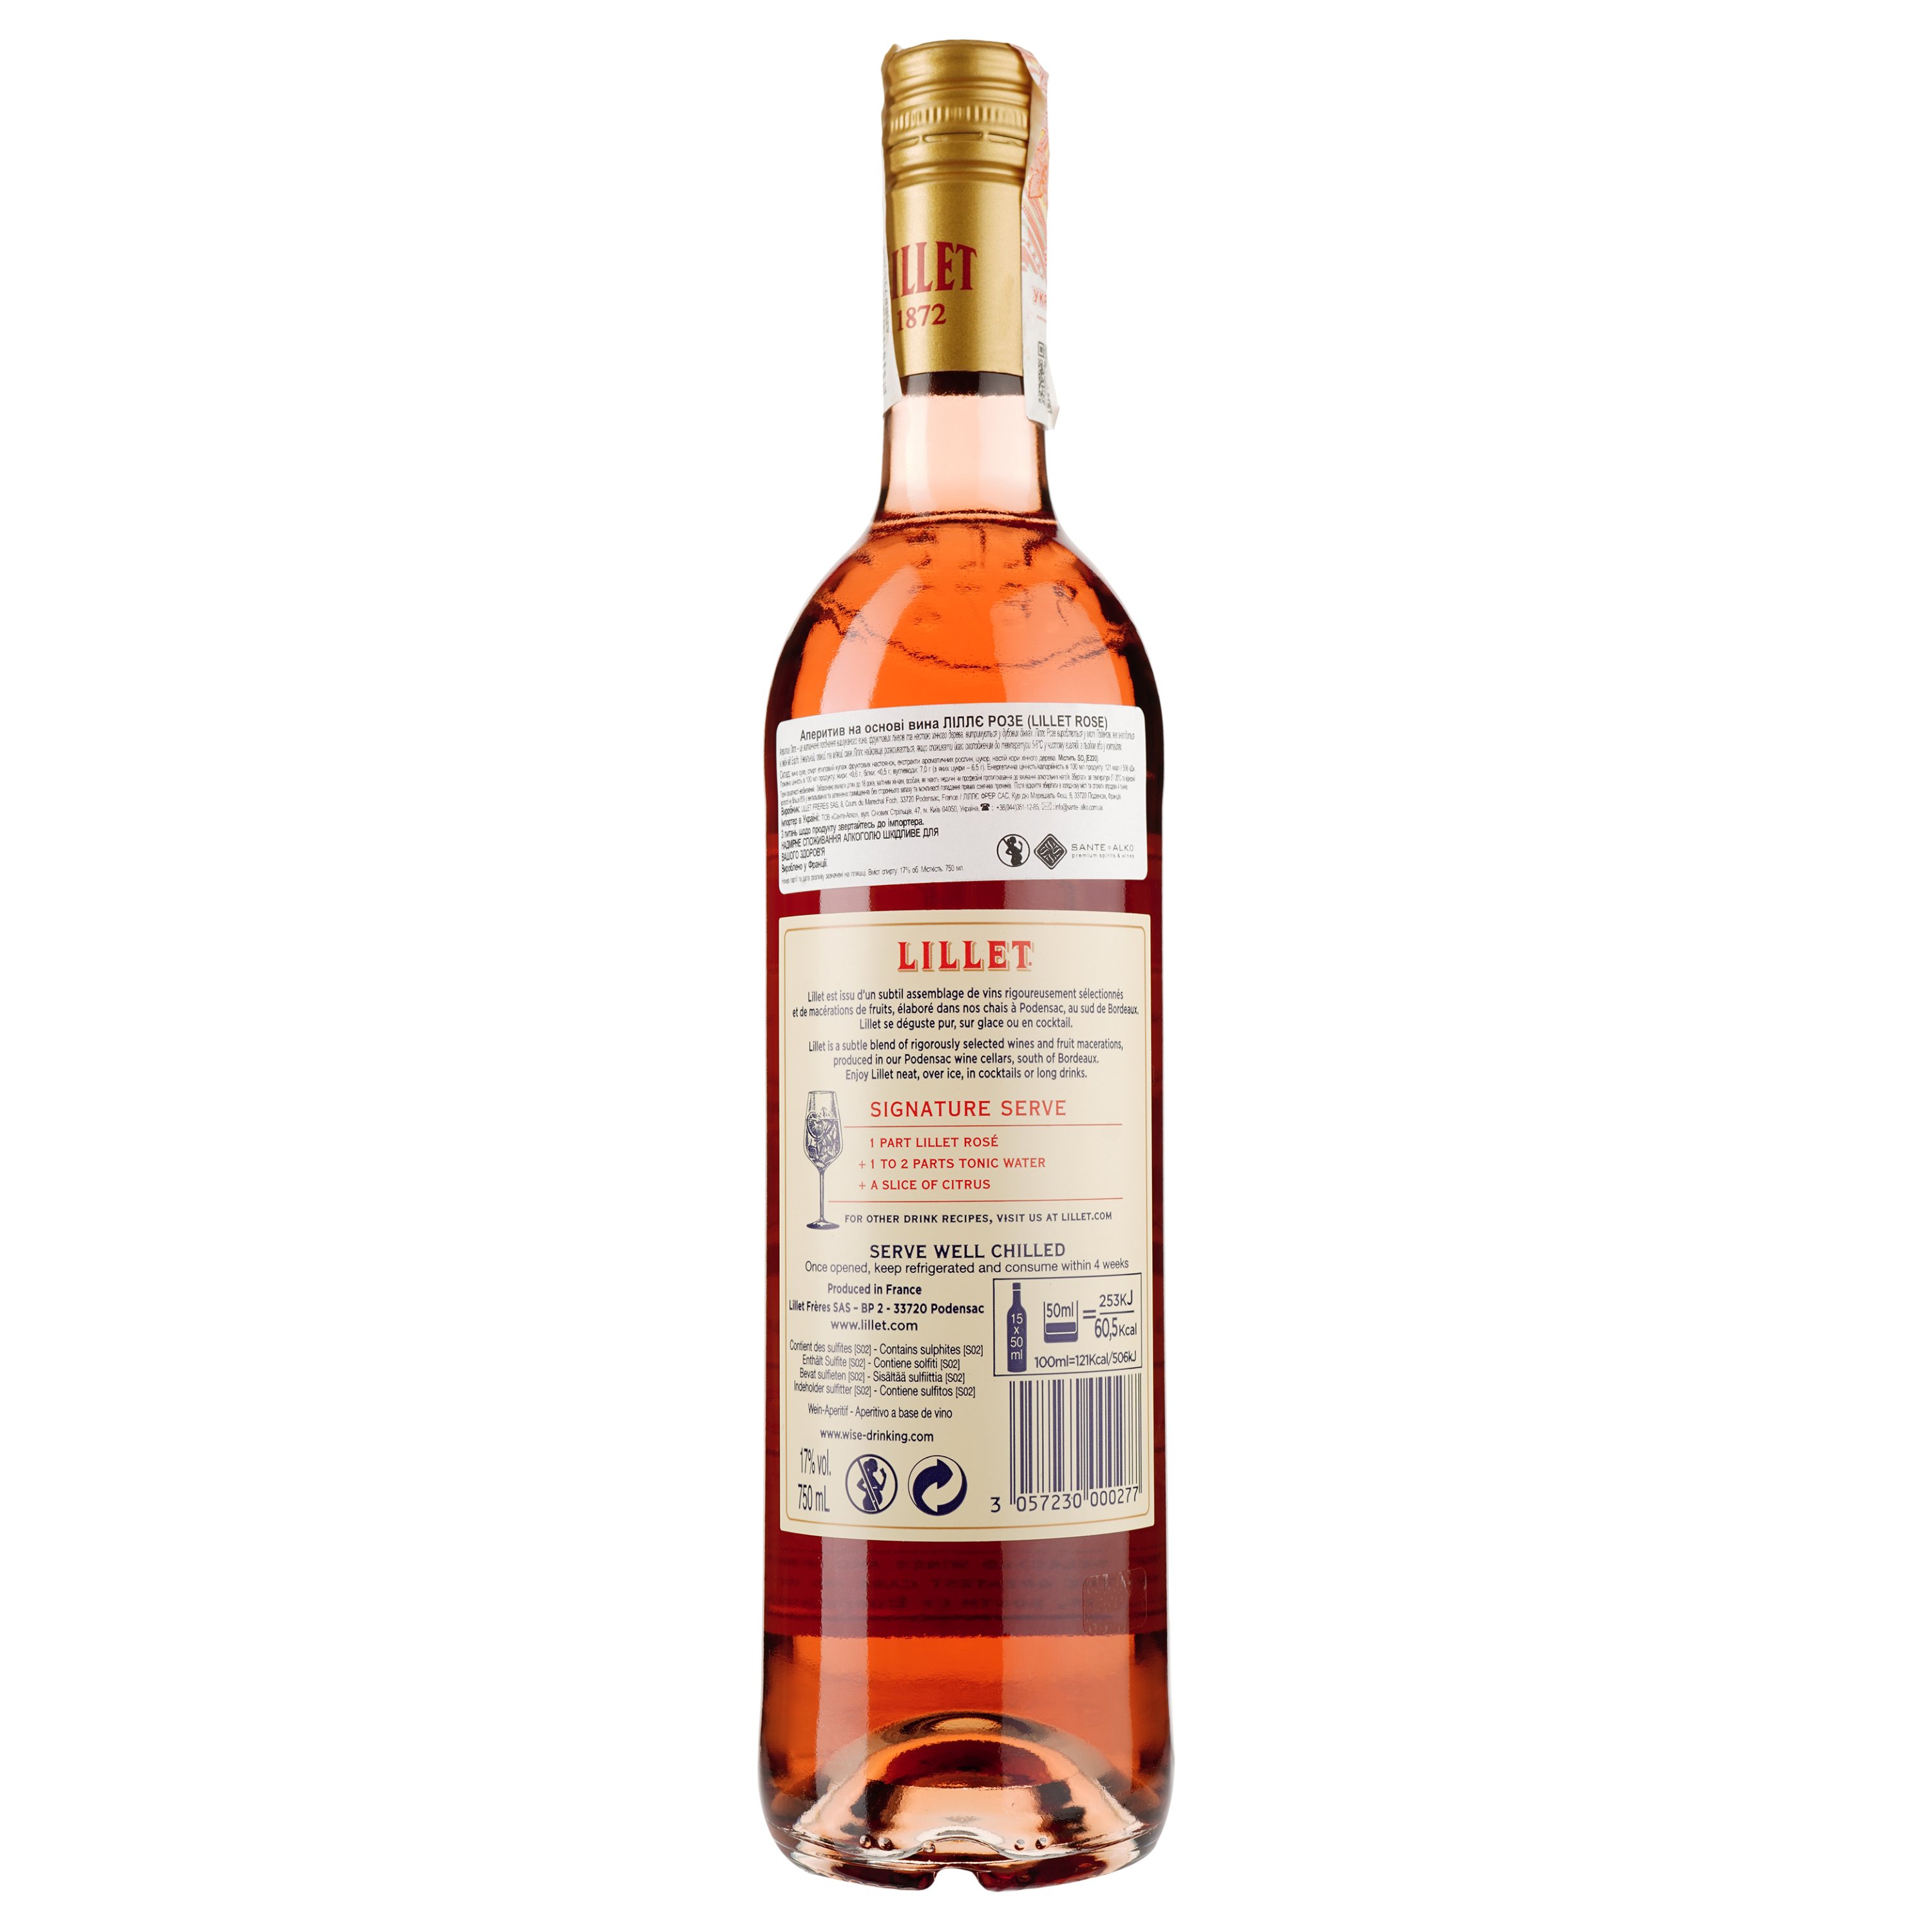 Rose цена, MAUDAU: вина, л в Киеве, 0,75 Украине характеристики 17%, Lillet Аперитив | отзывы, купить на основе